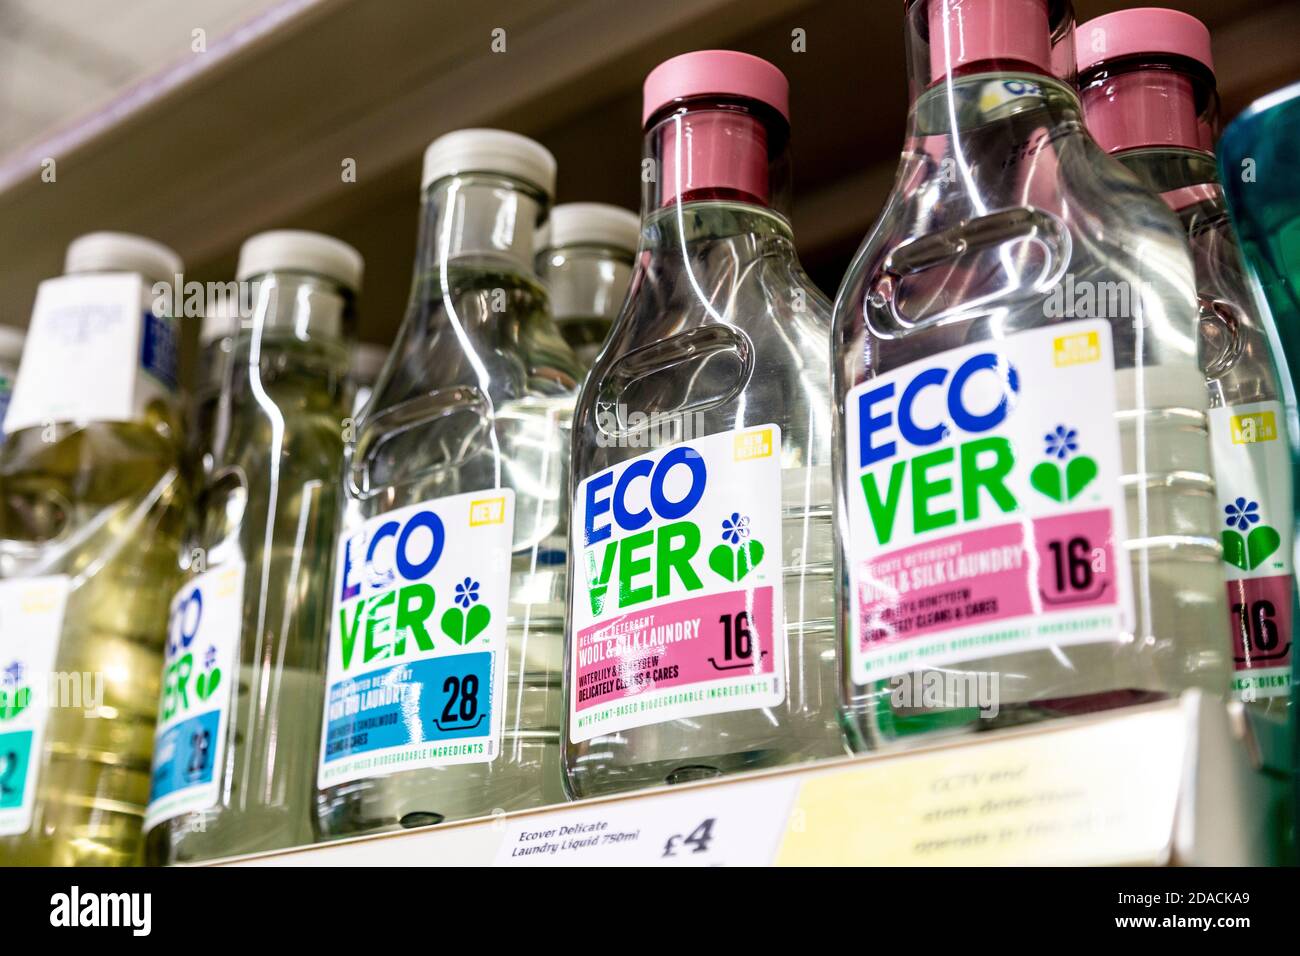 Primo piano di detergente ecologico per bucato eCover su scaffale supermercato, Londra, Regno Unito Foto Stock